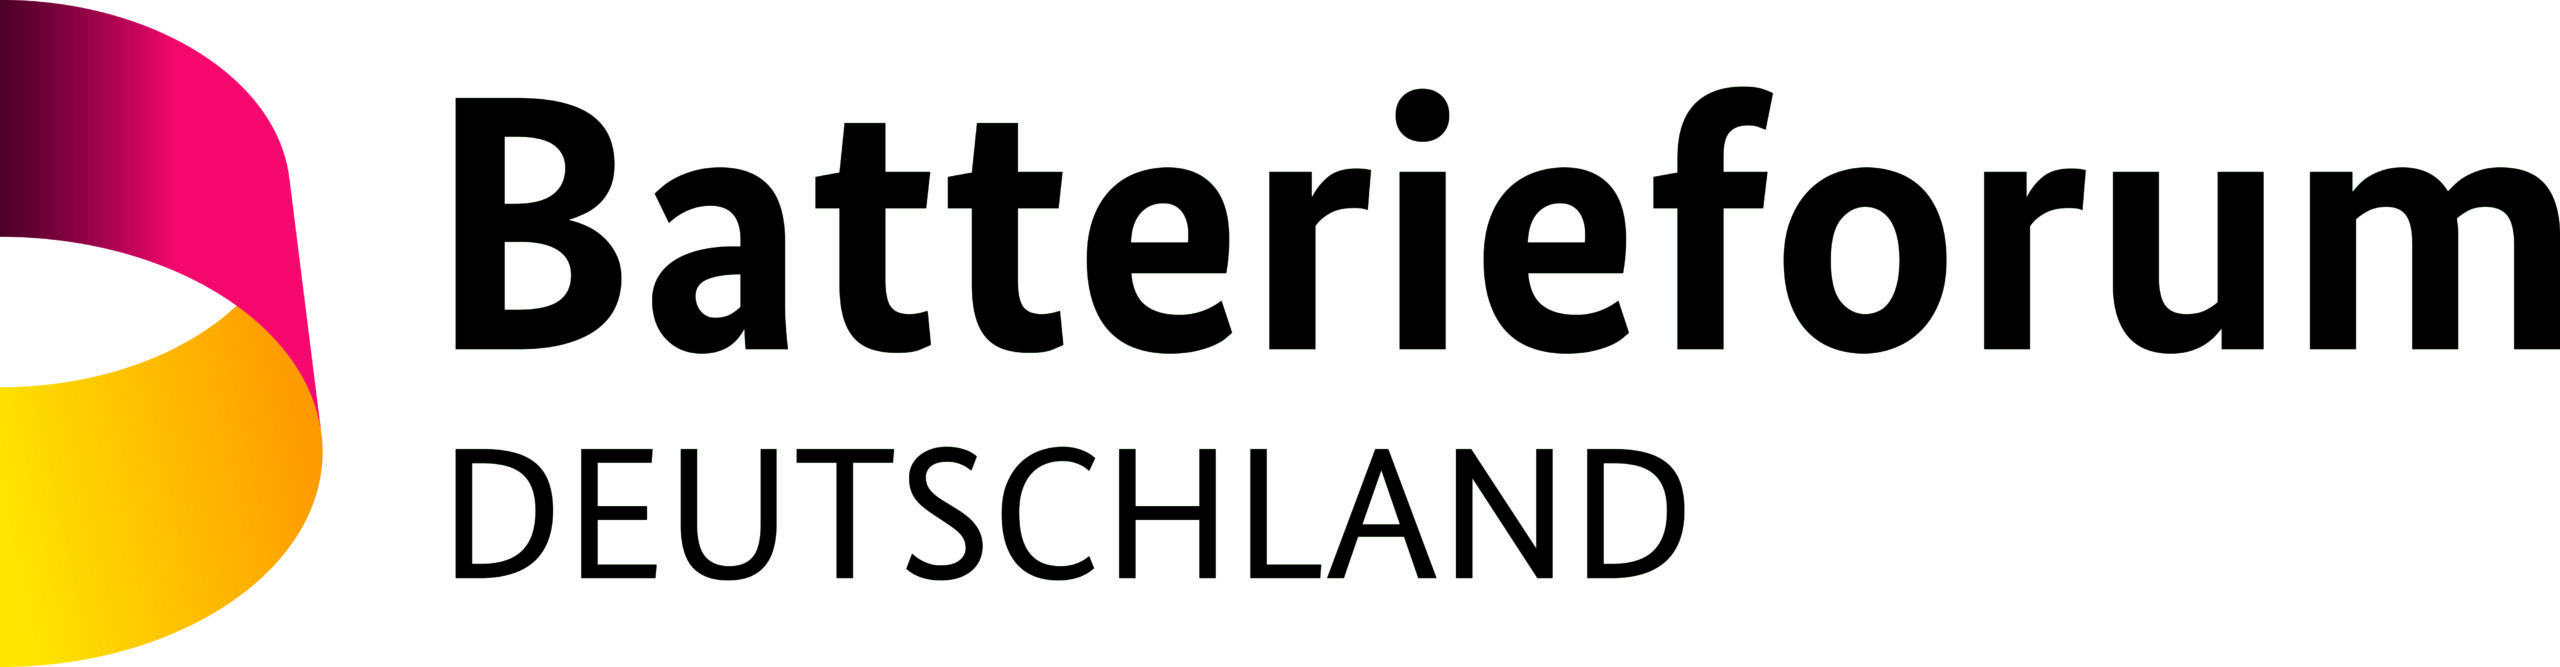 Batterieforum Deutschland